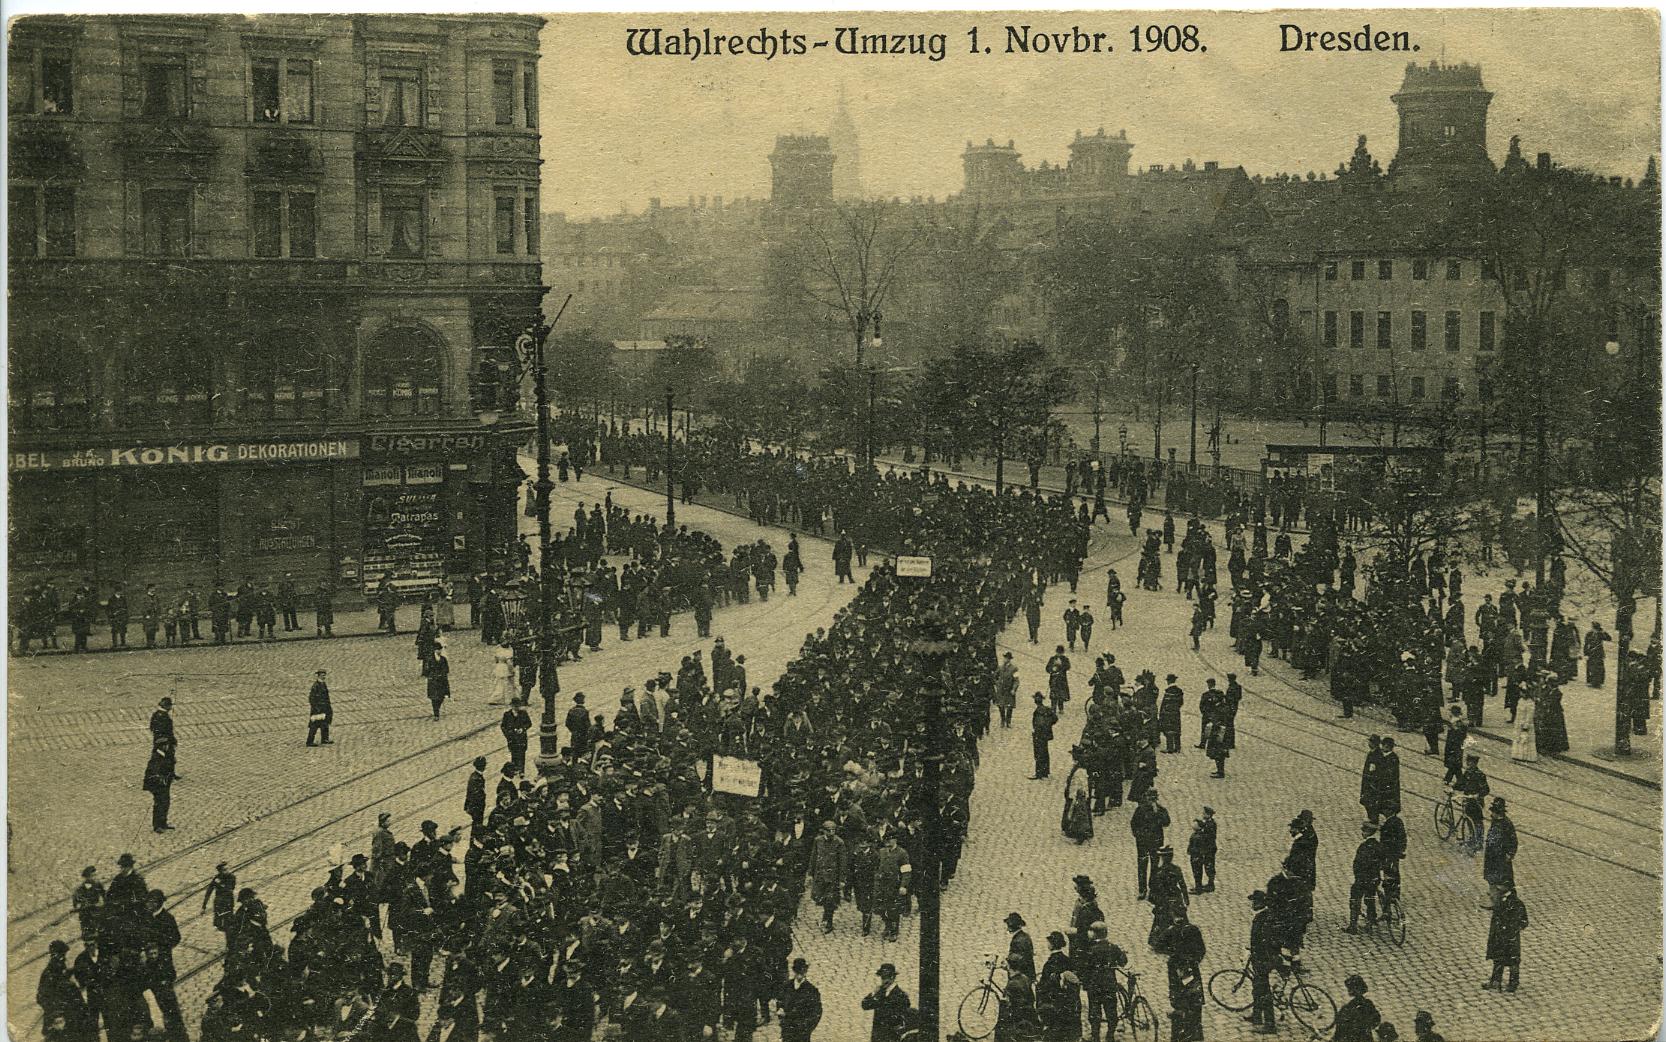 Foto: Demonstration zur Einführung des Allgemeinen Wahlrechts in Dresden, 1908